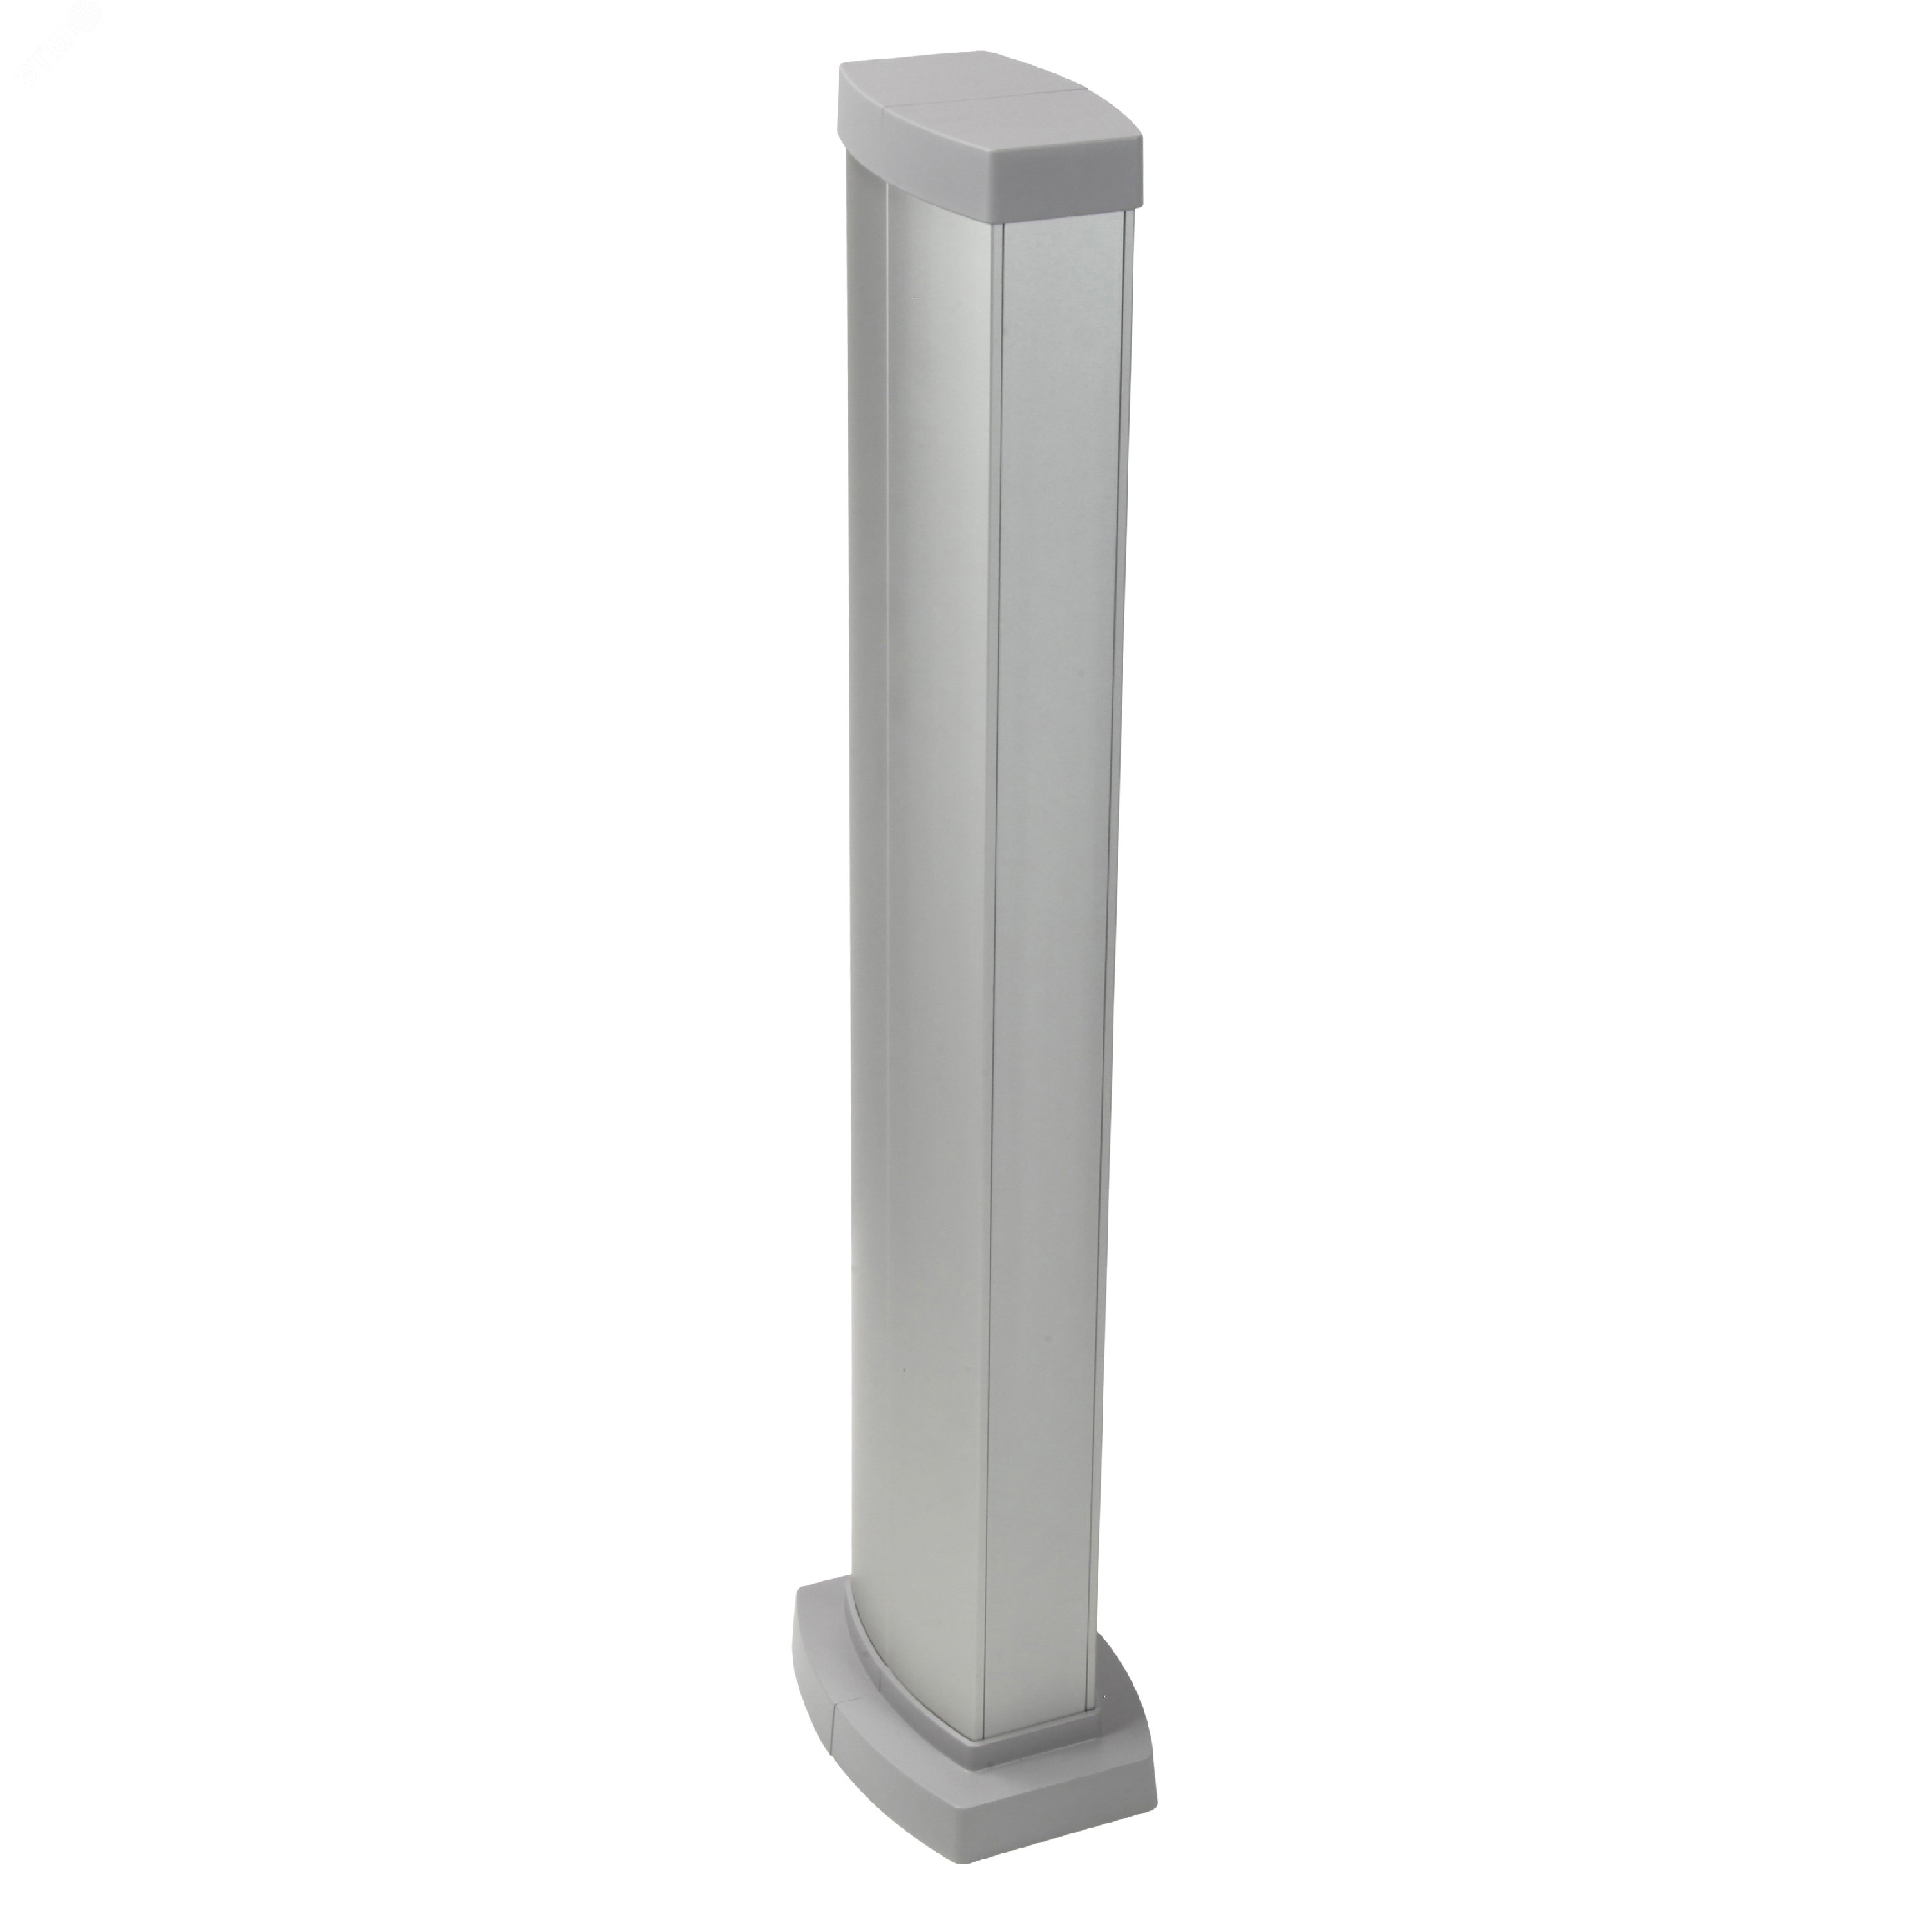 Snap-On мини-колонна алюминиевая с крышкой из алюминия, 2 секции, высота 0,68 метра, цвет алюминий 653024 Legrand - превью 2